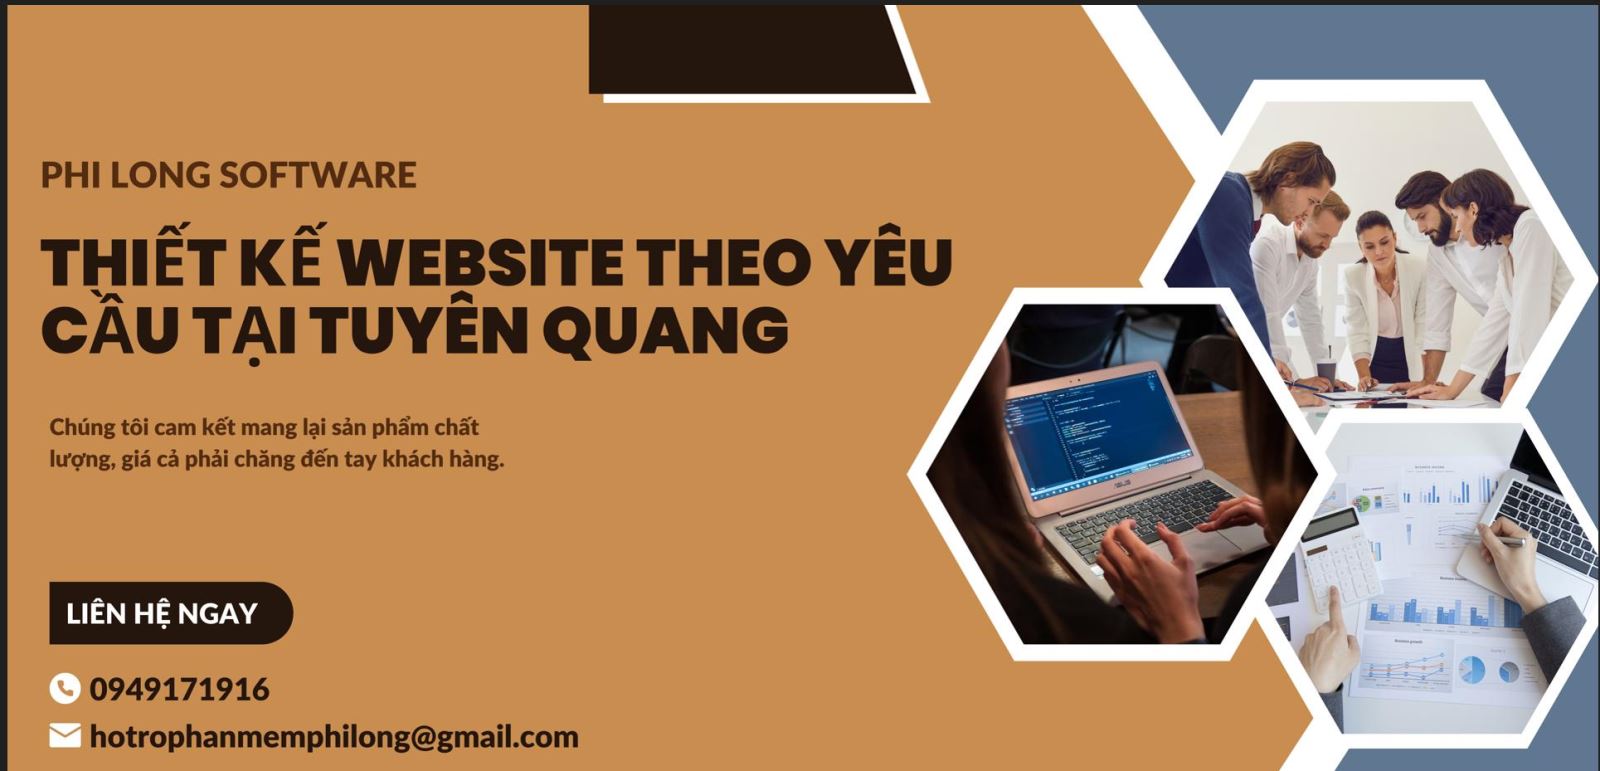 Thiết kế website theo yêu cầu tại Tuyên Quang | Uy tín | Giá rẻ